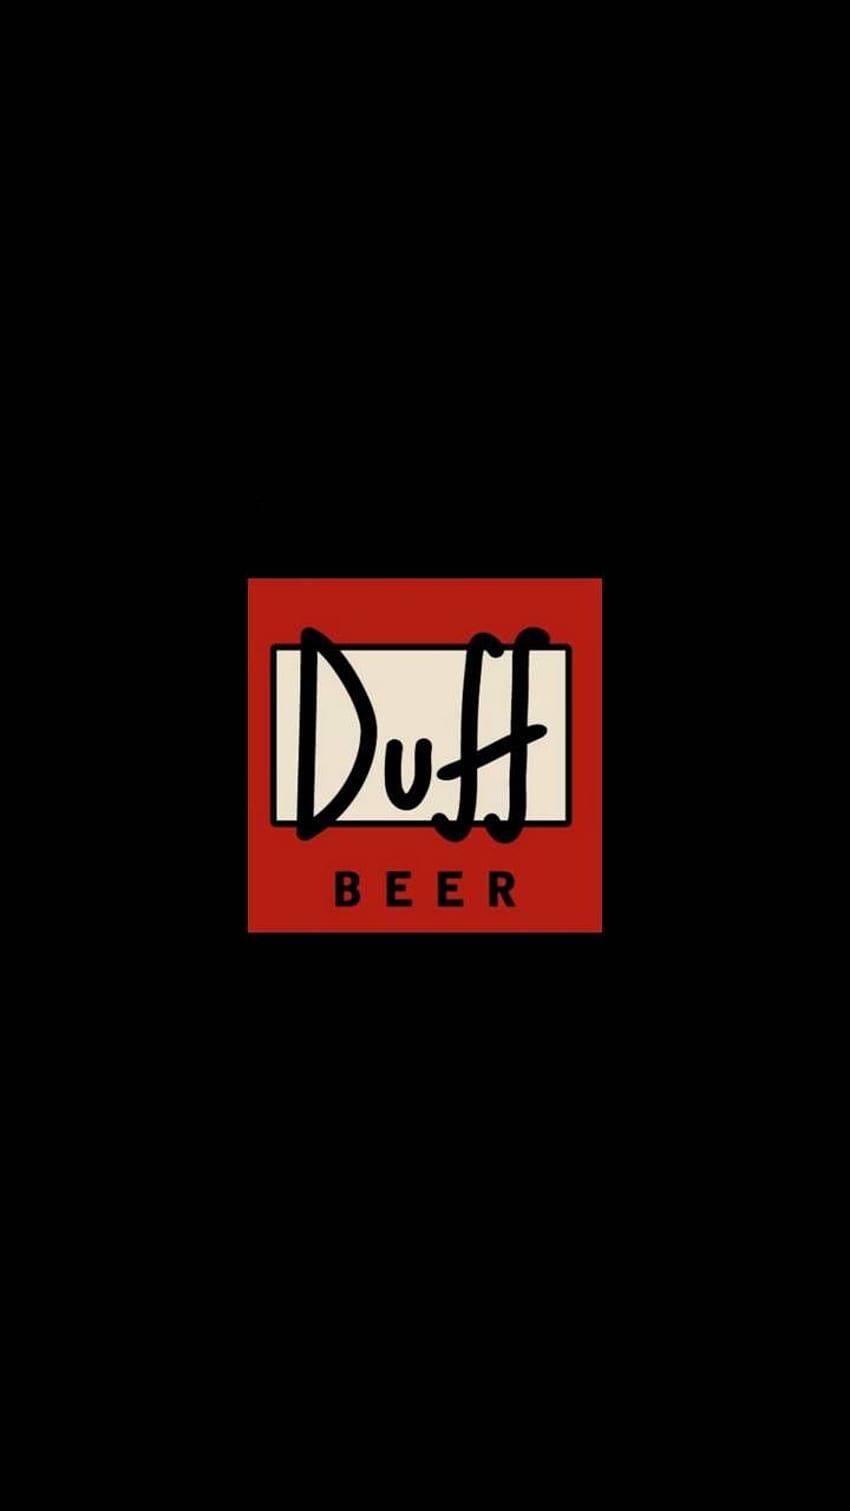 Duff Beer Logo HD phone wallpaper